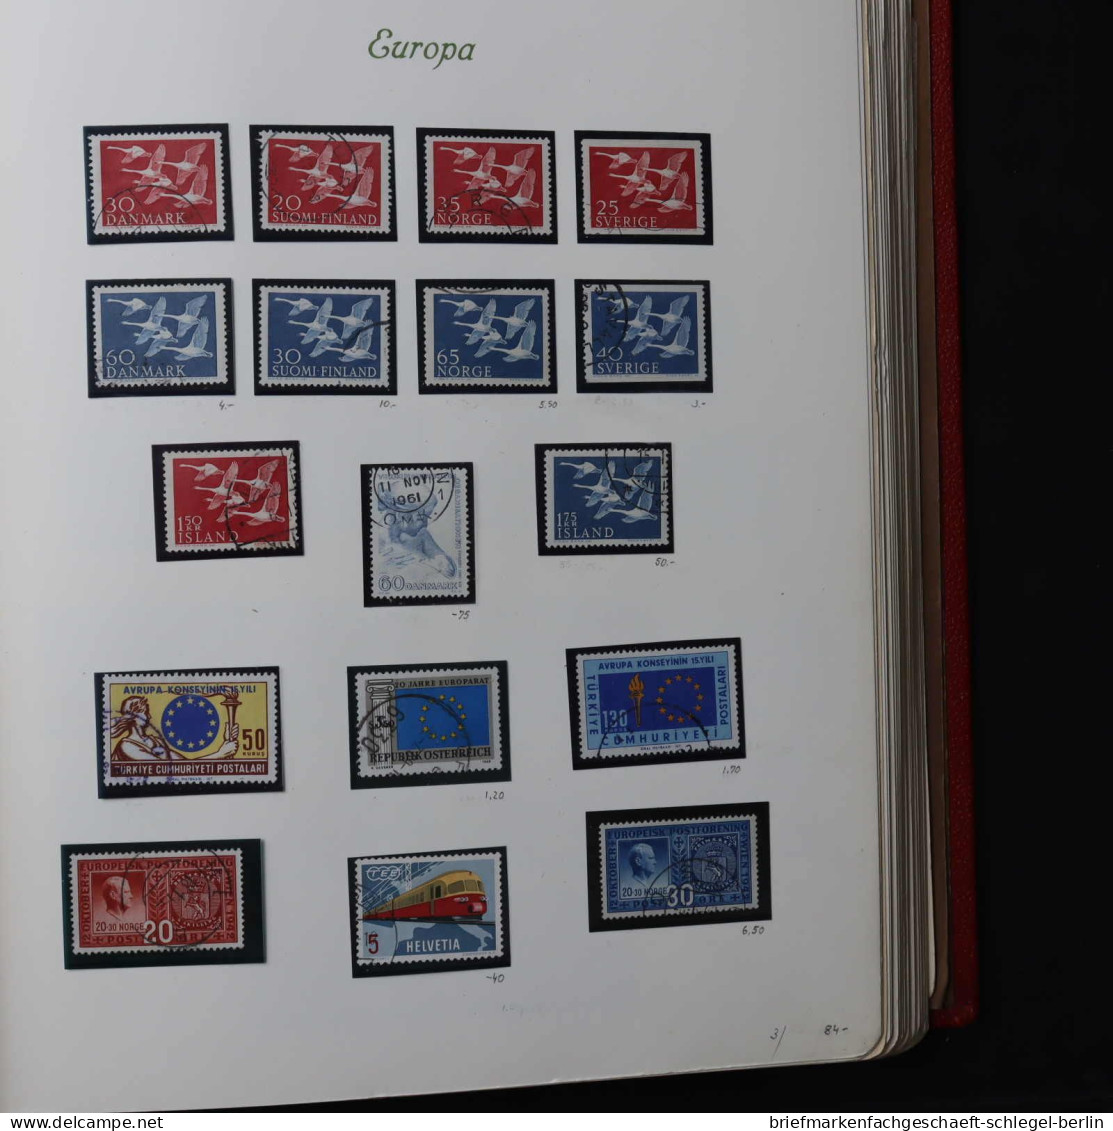 Sammlung/Posten Europa CEPT, postfrisch, gestempelt, Brief